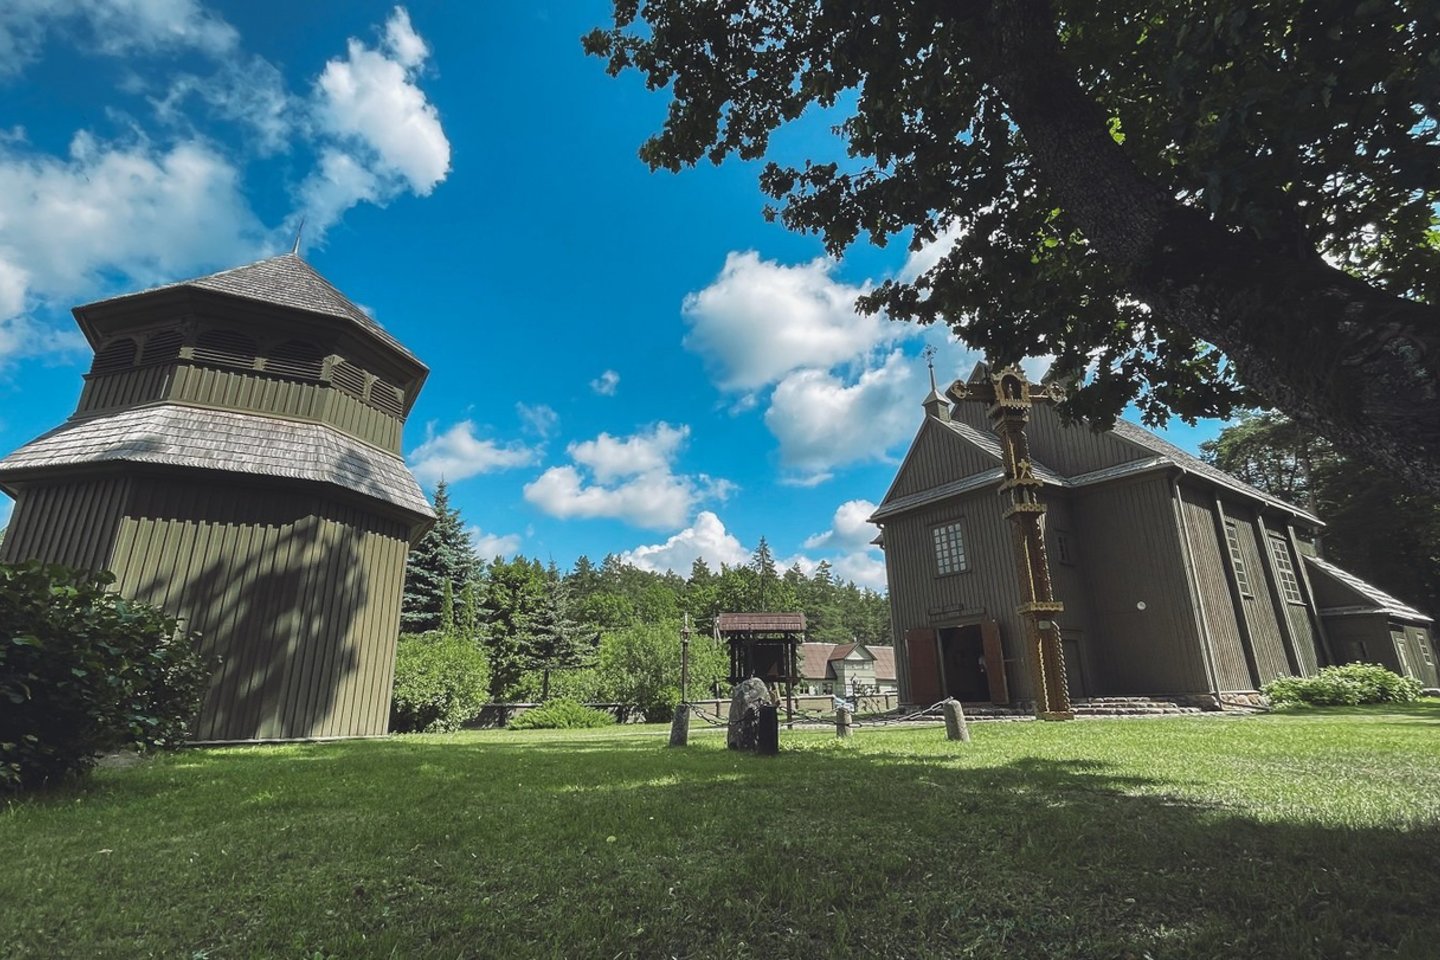 Paskutinį vasaros mėnesį Ignalinos kraštas pasitinka su nuostabaus kraštovaizdžio gamta ir įvairiais renginiais.